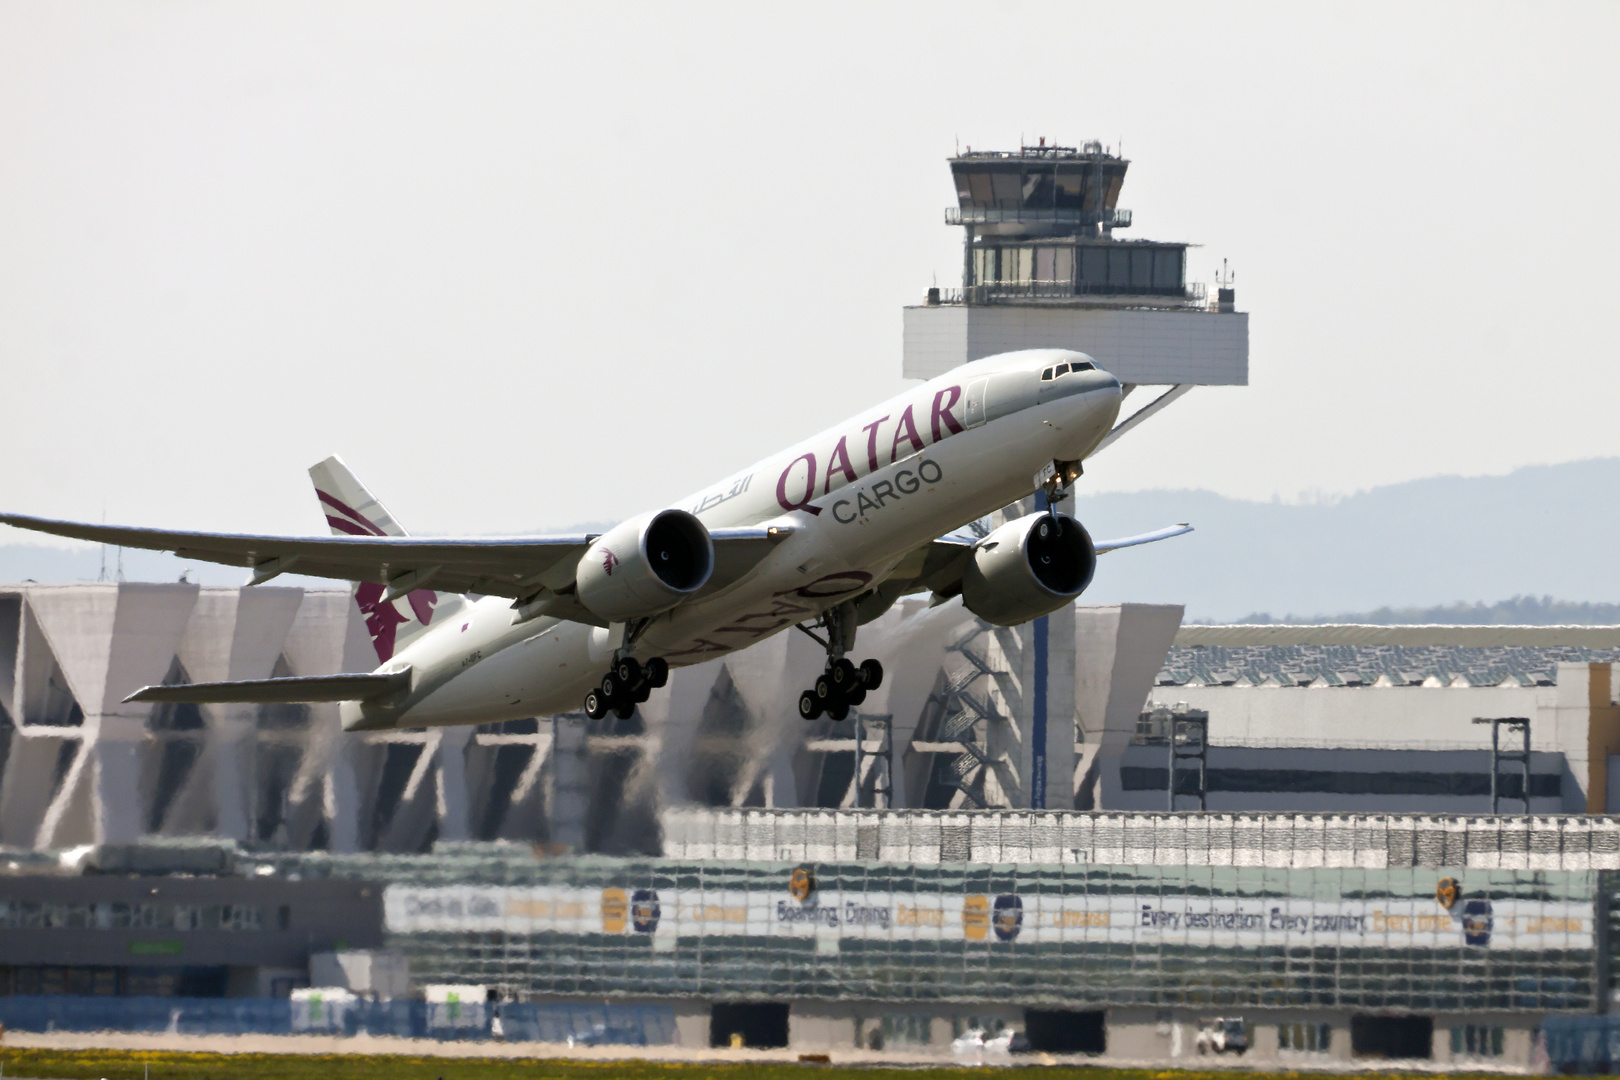 Frankfurt Flughafen: Start Qatar Carco Boeing 777